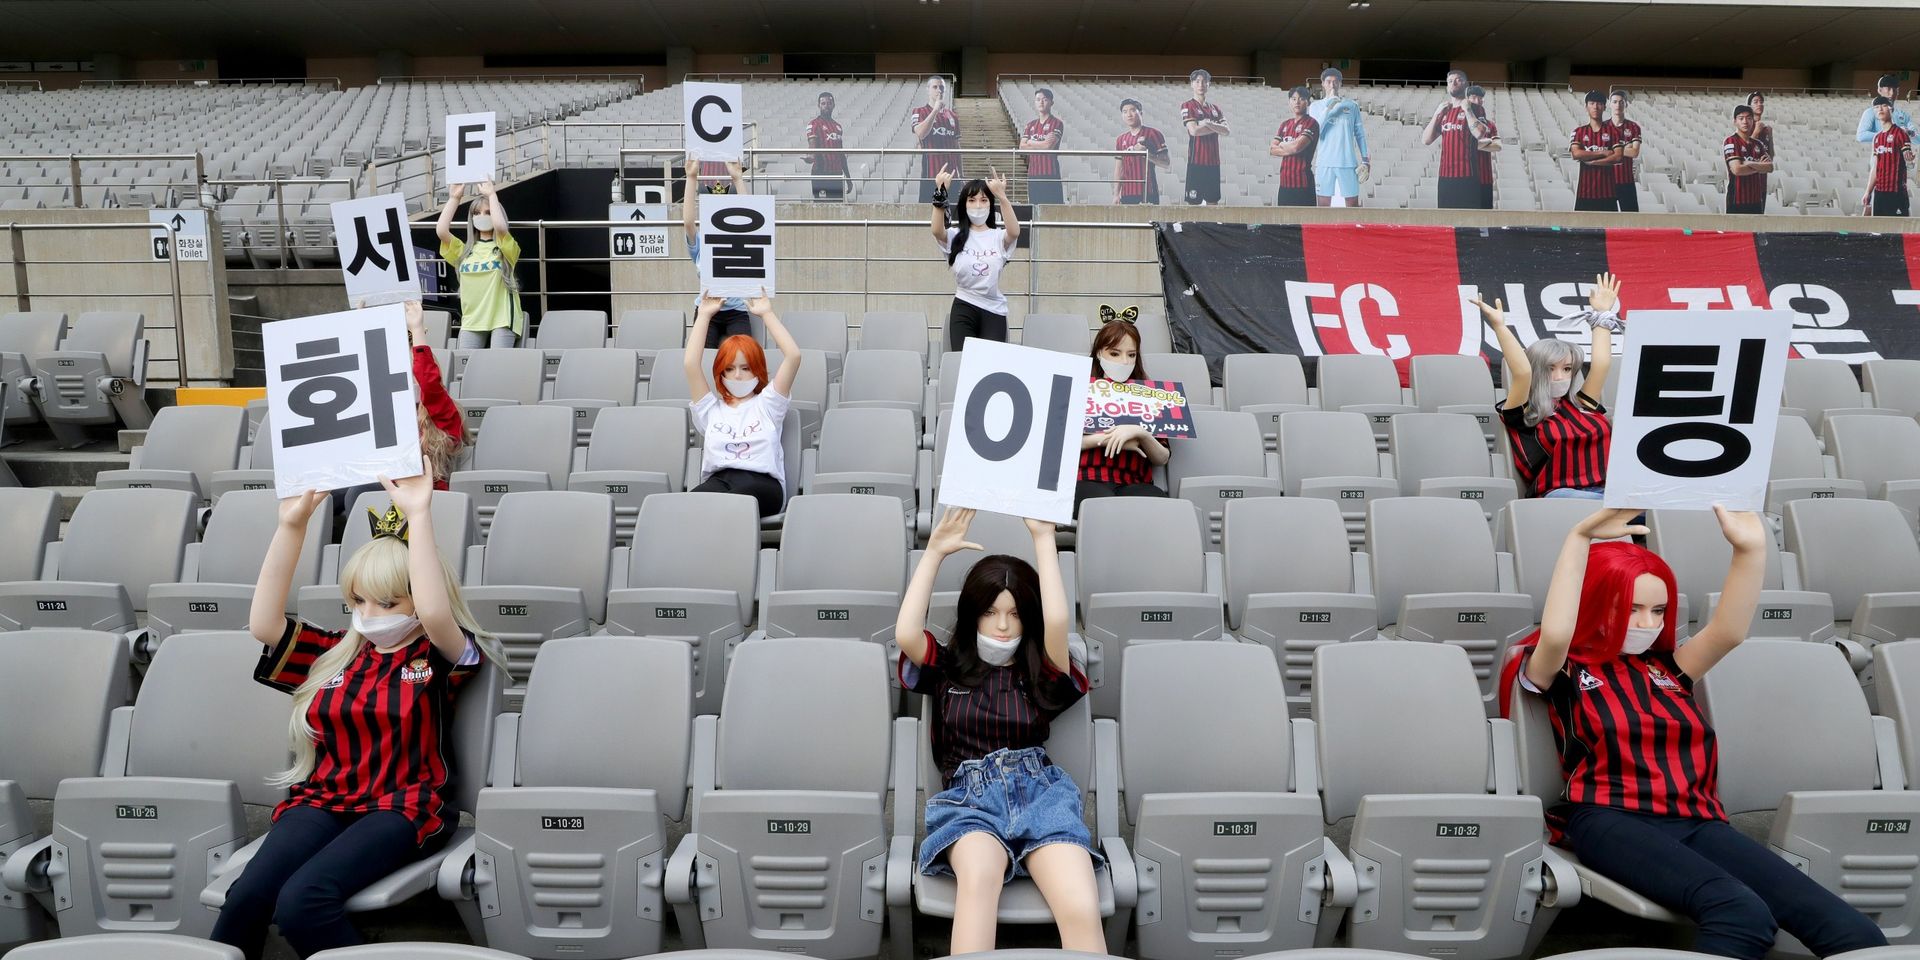 Insolite: Le FC Séoul reçoit une amende pour avoir rempli ses tribunes avec des poupées sexuelles